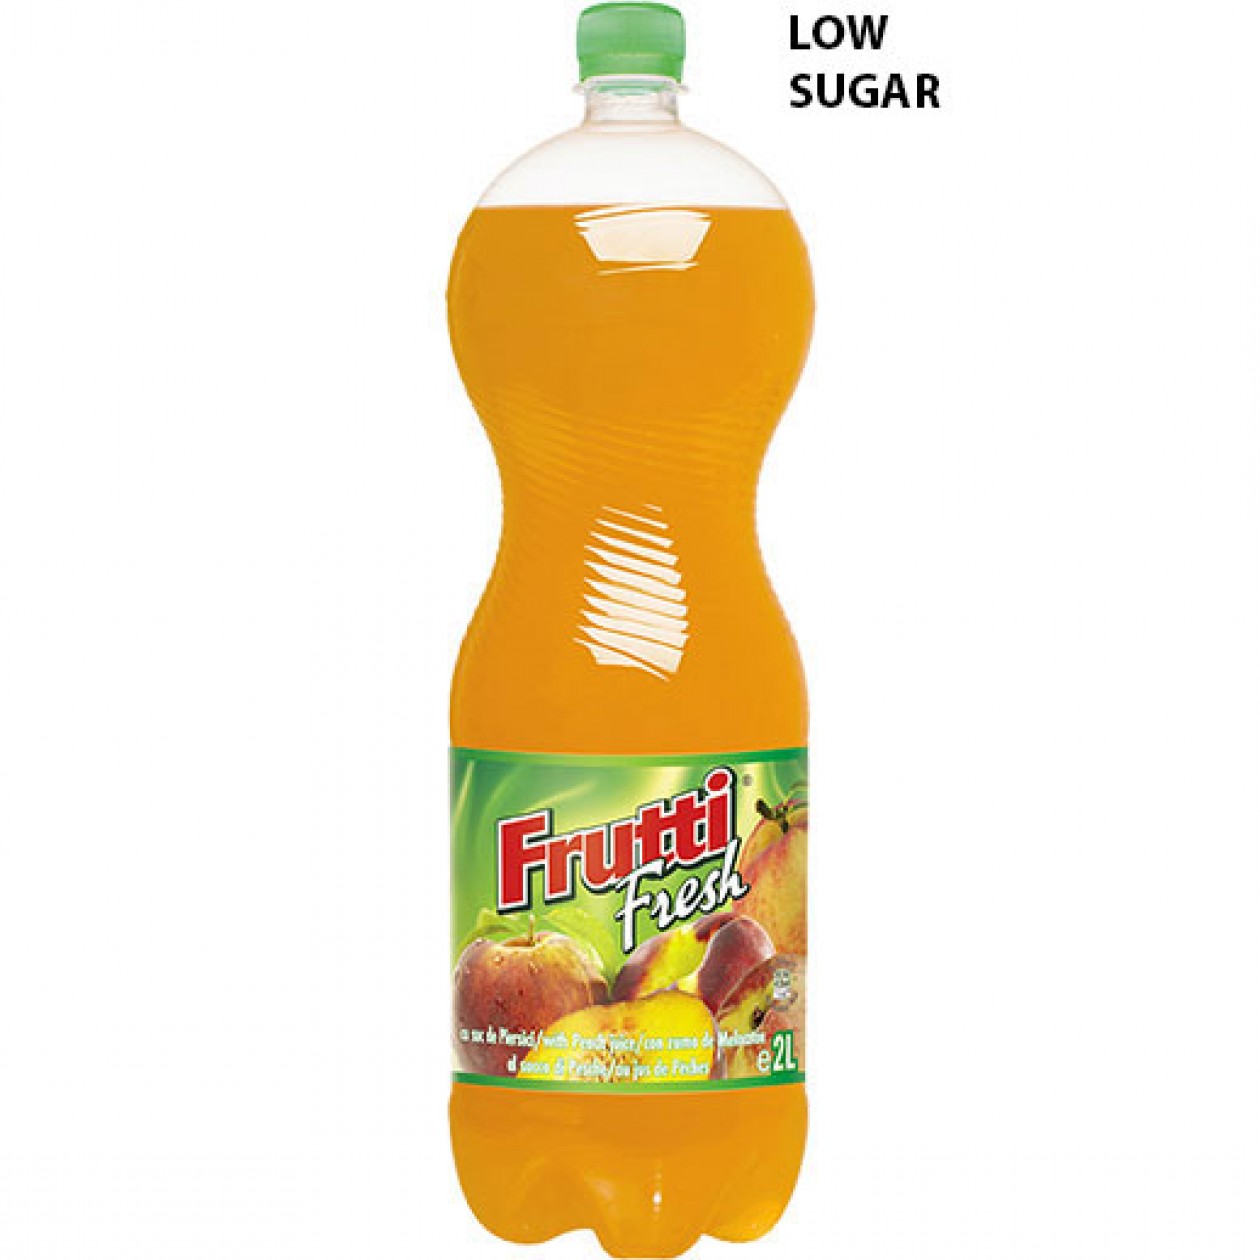 Frutti Fresh Peach Drink (Low Sugar) 6x2L